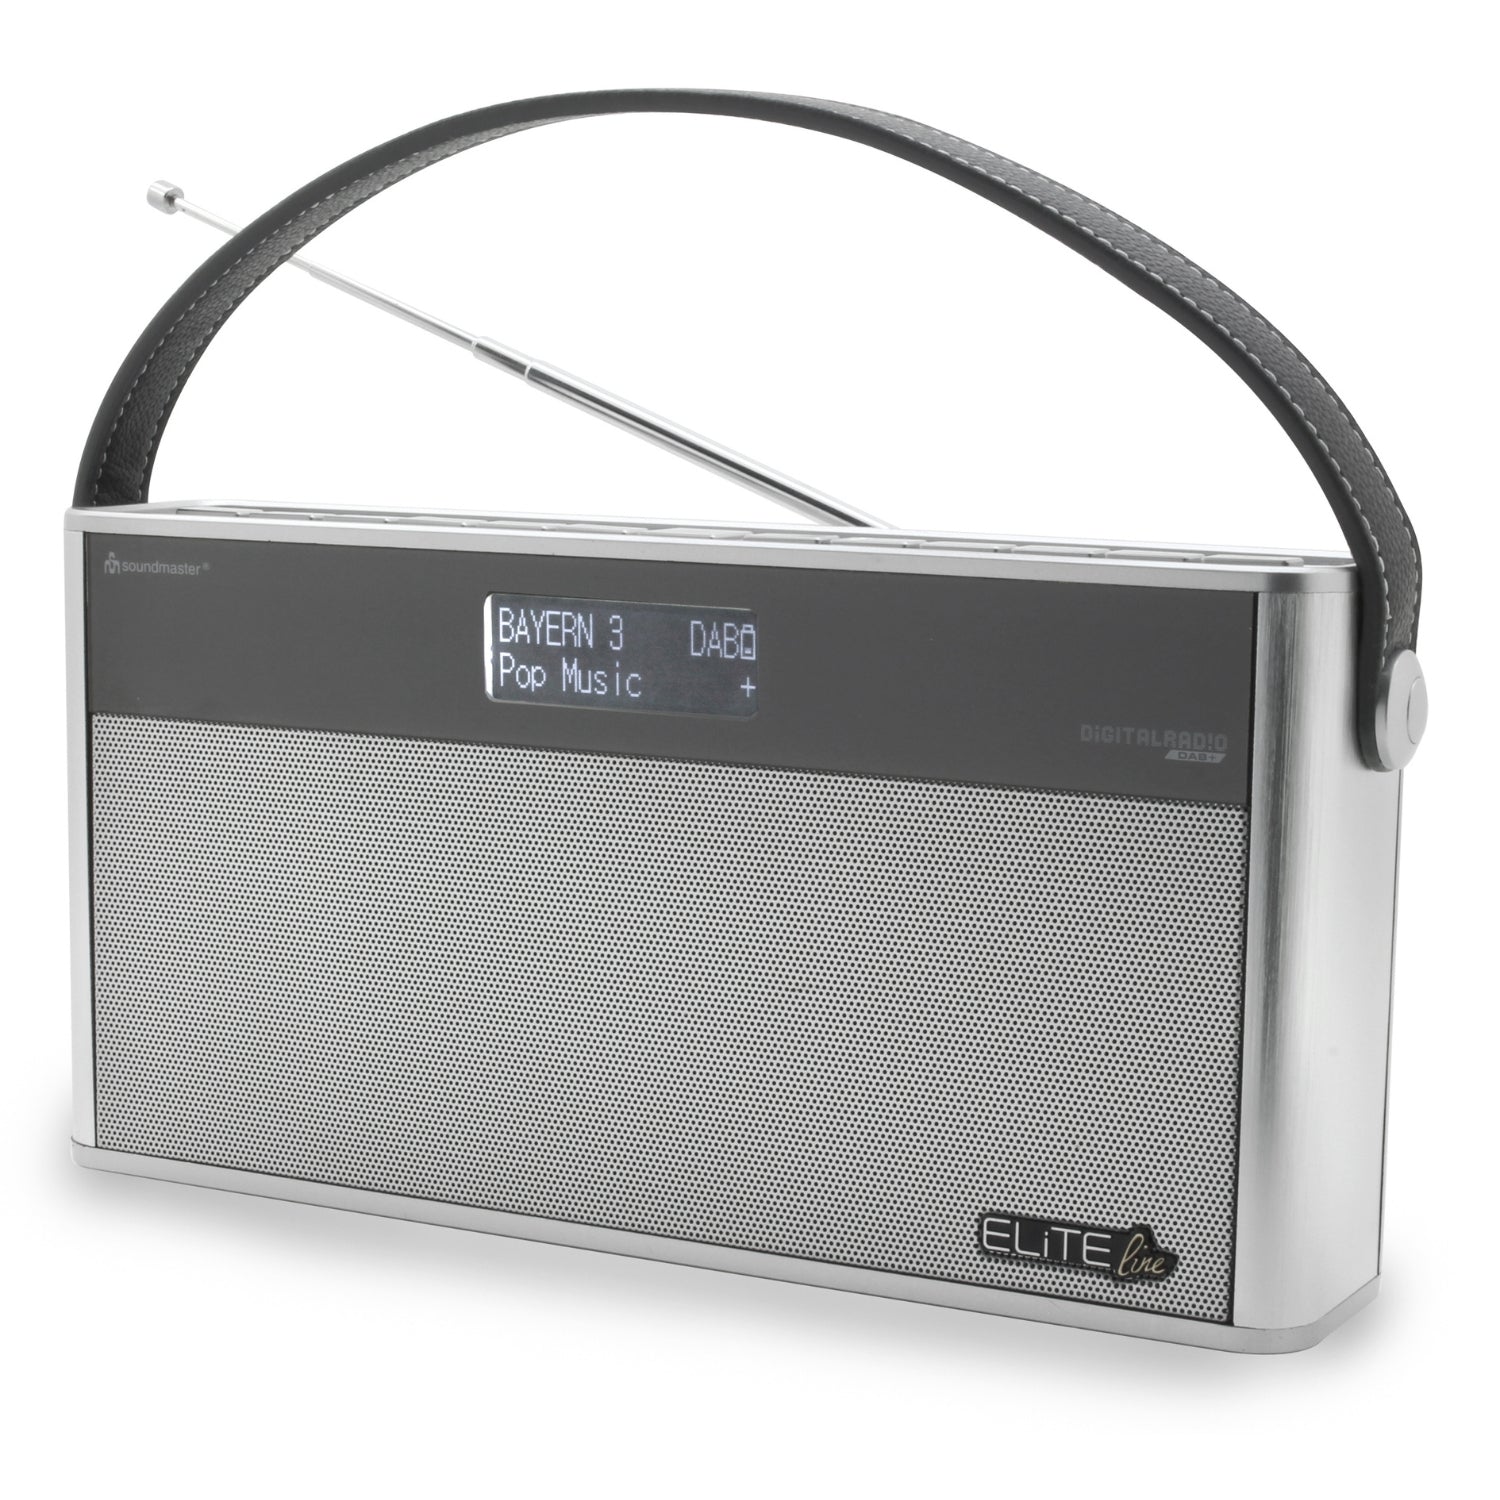 Soundmaster EliteLine DAB750SI radio numérique portable DAB + FM Bluetooth batterie au lithium intégrée